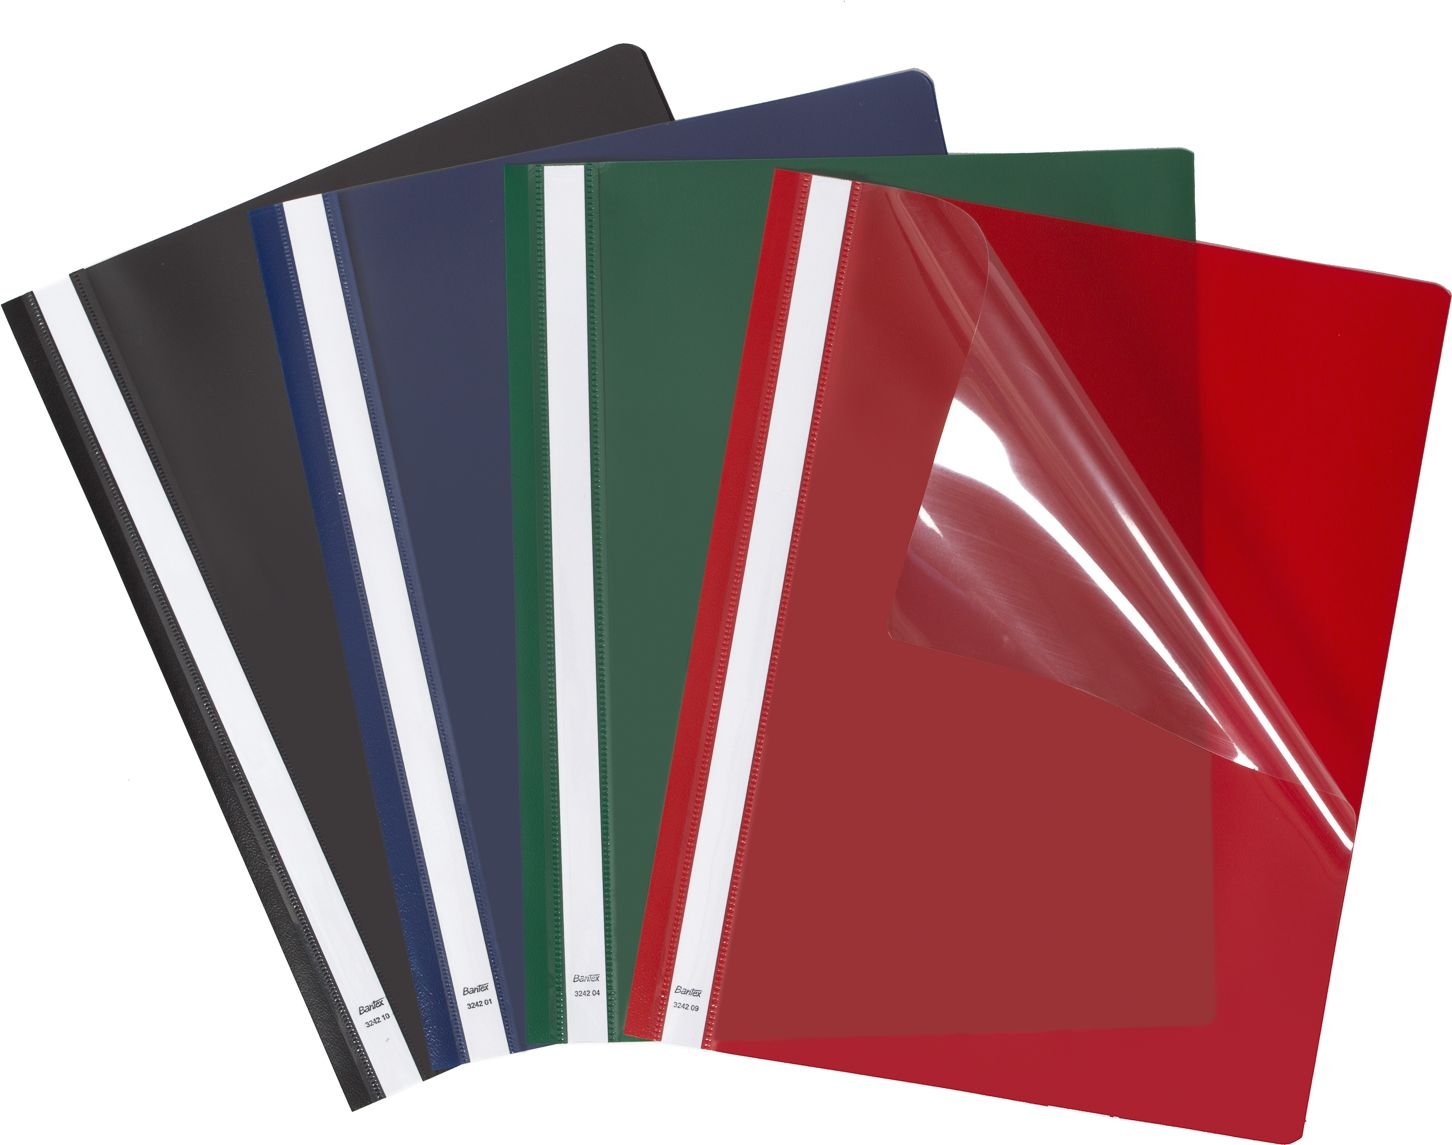 Dosare - Bantex Standard A4 cu mustață roșie 25 buc